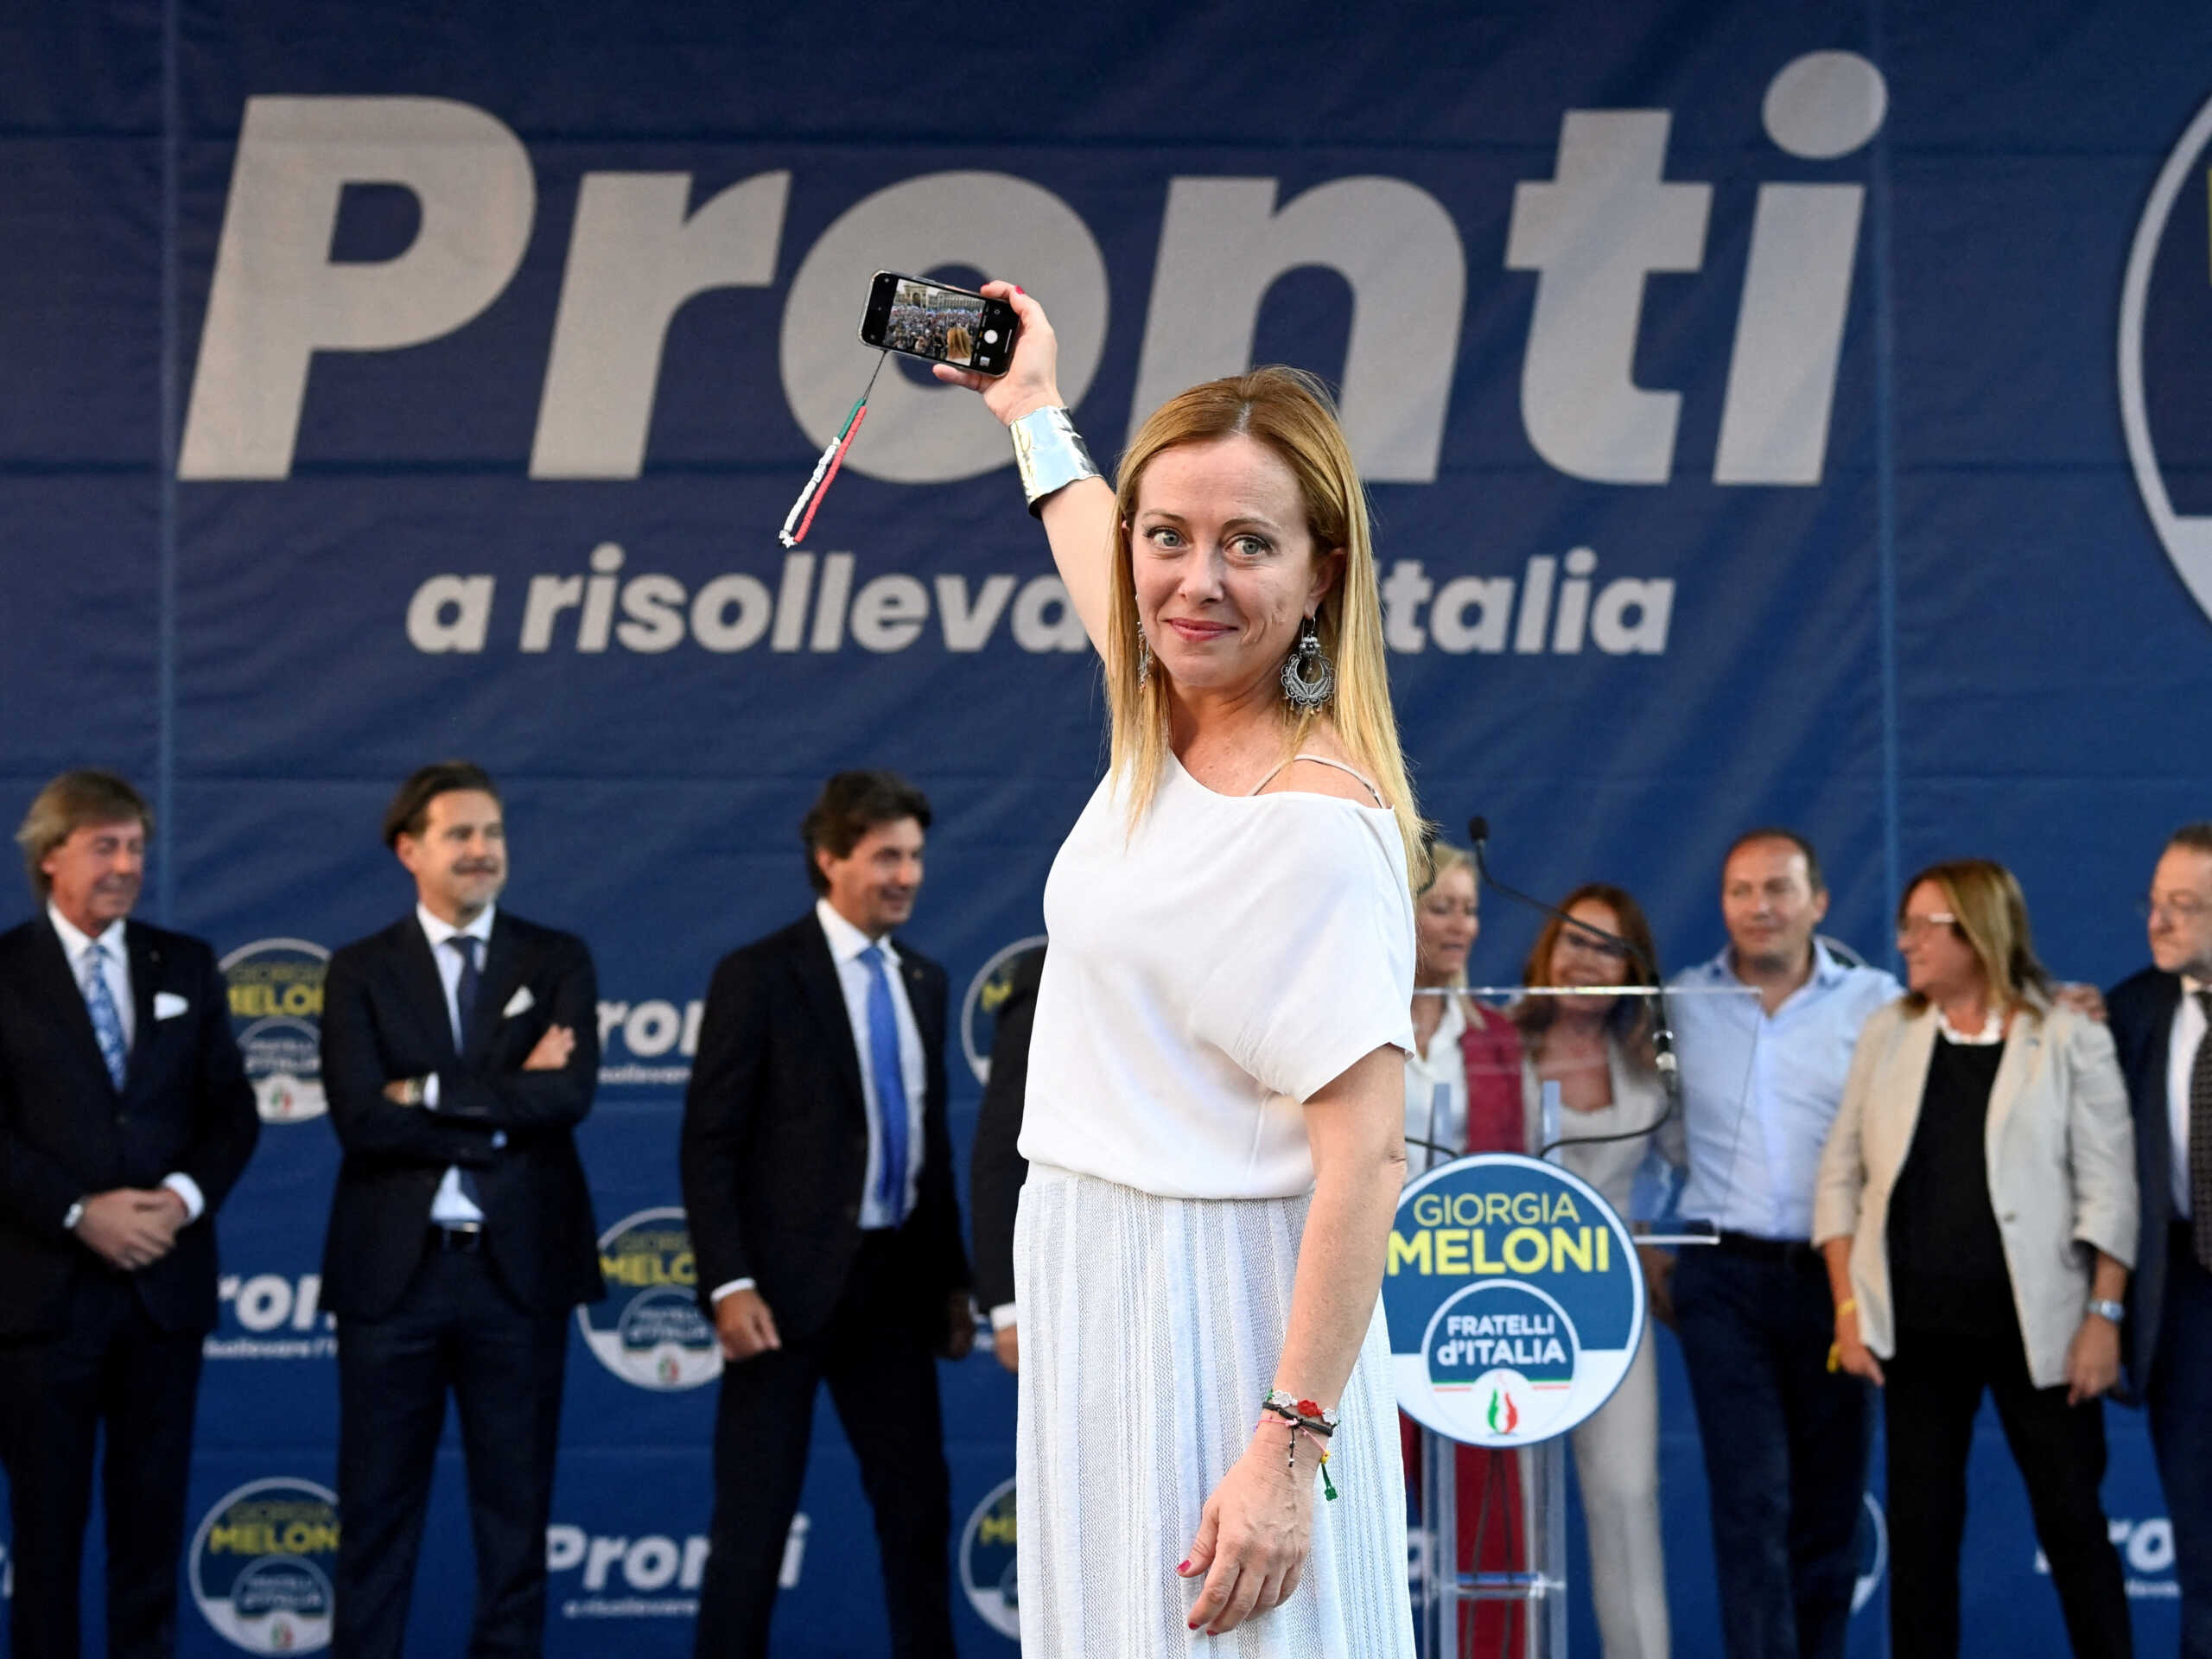 Εκλογές στην Ιταλία – Τζόρτζια Μελόνι: Η 45χρονη ακροδεξιά πολιτικός που αναλαμβάνει την εξουσία